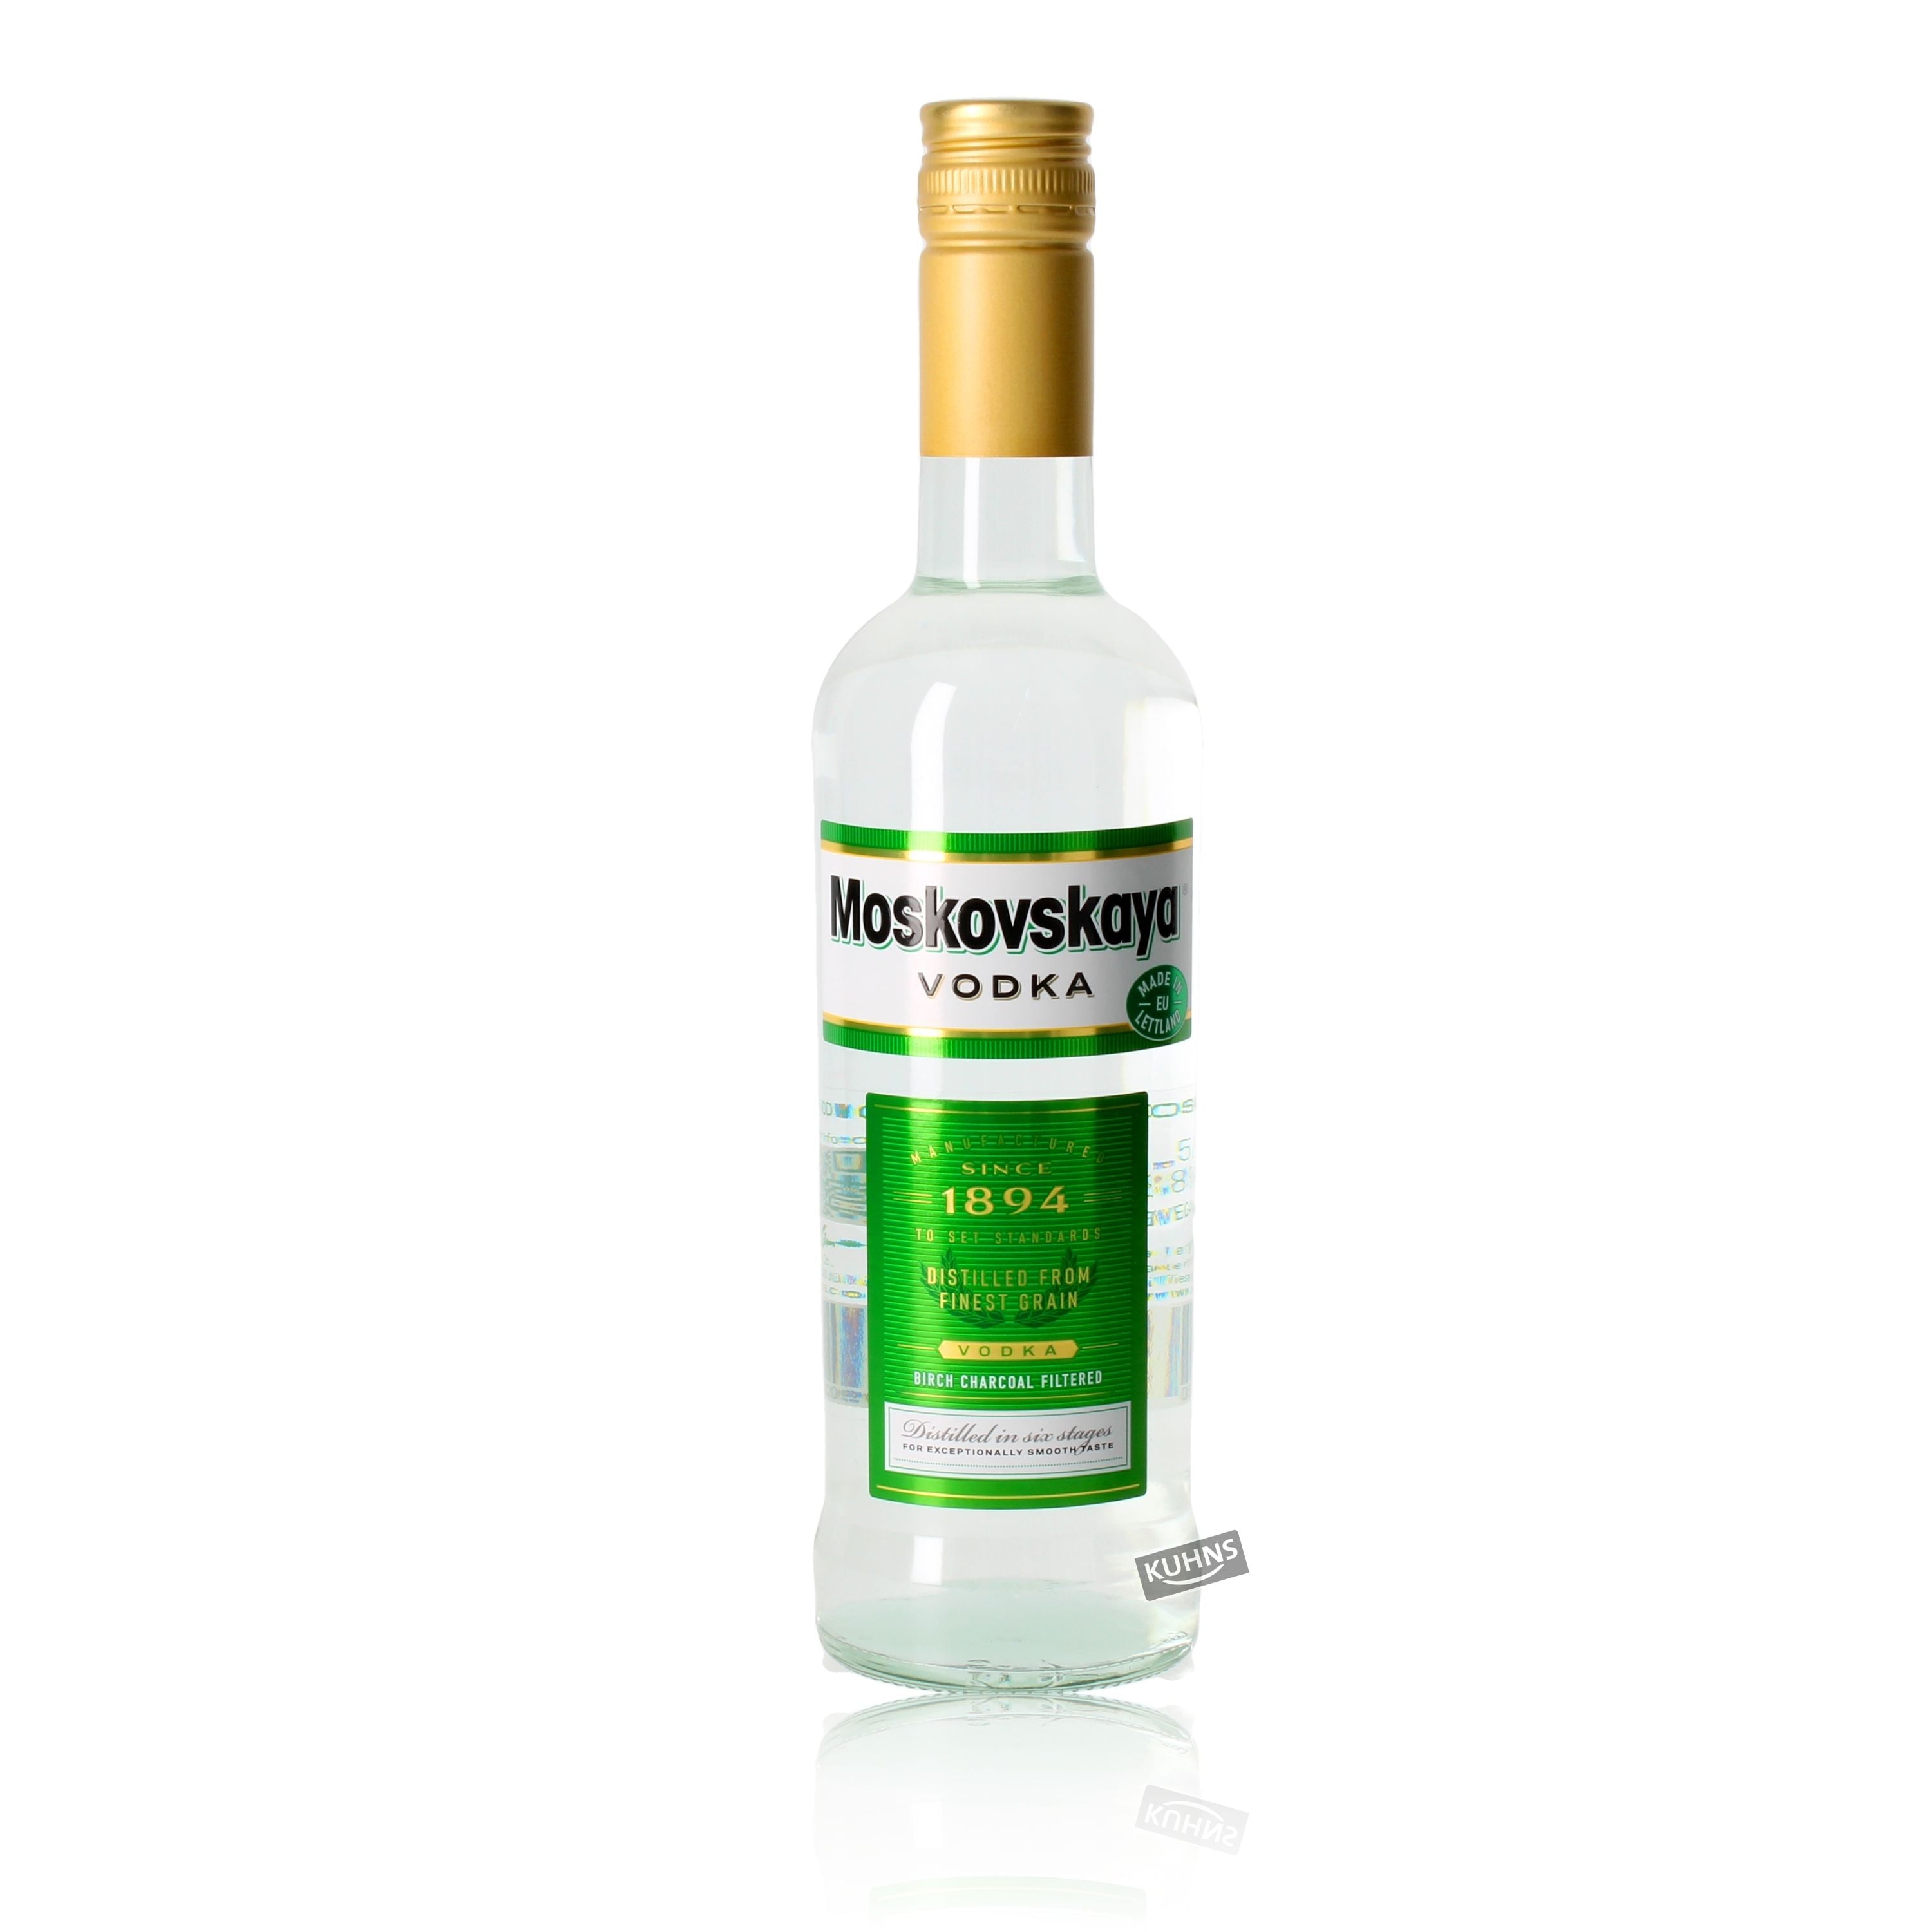 Moskovskaya 0,5l, alc. 38 Vol.-%, Wodka Lettland